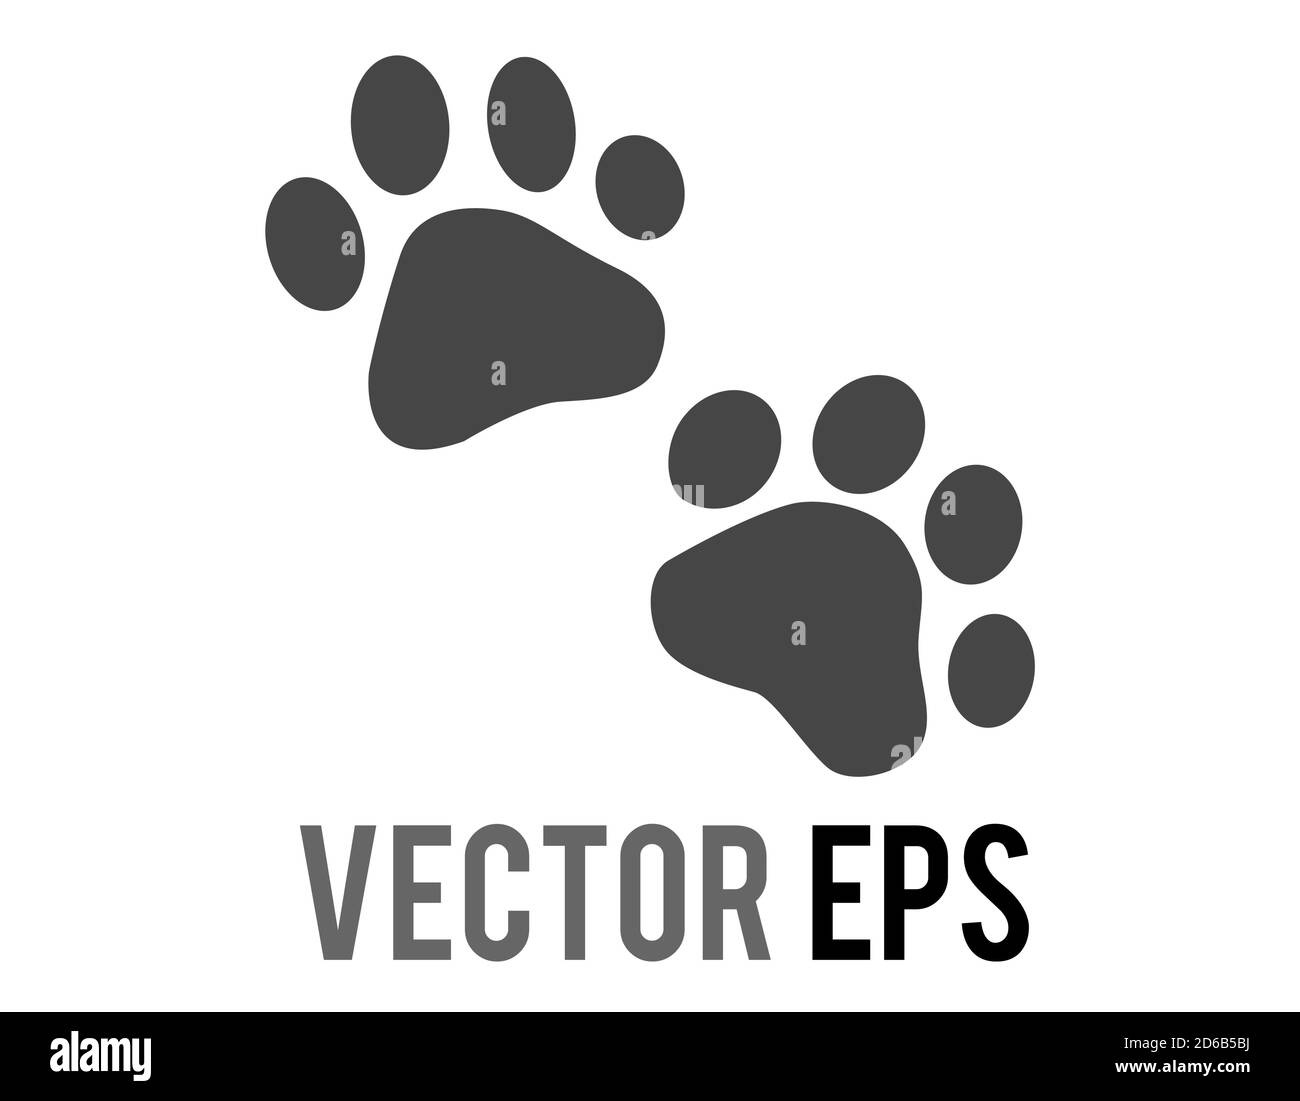 La paire vectorielle isolée de pattes noires imprime une icône, montrant quatre orteils et un coussinet, utilisé pour divers contenus concernant les chats et les chiens d'animaux de compagnie Illustration de Vecteur